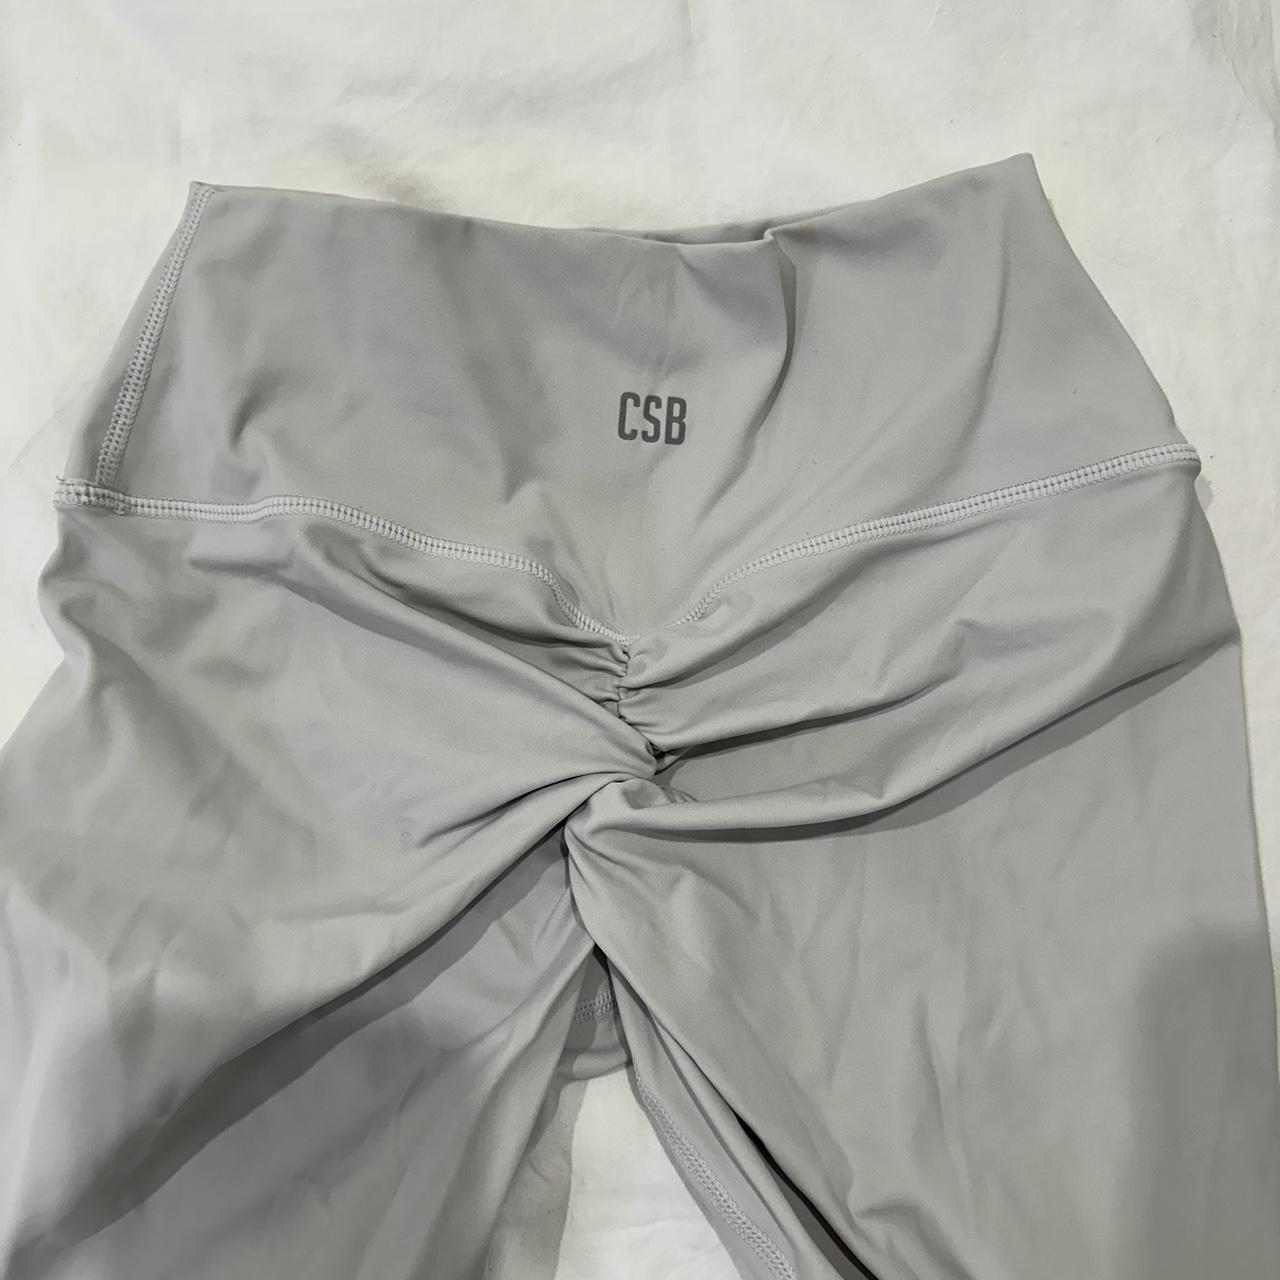 CSB shorts Black Freedom Scrunch Shorts 4” in - Depop